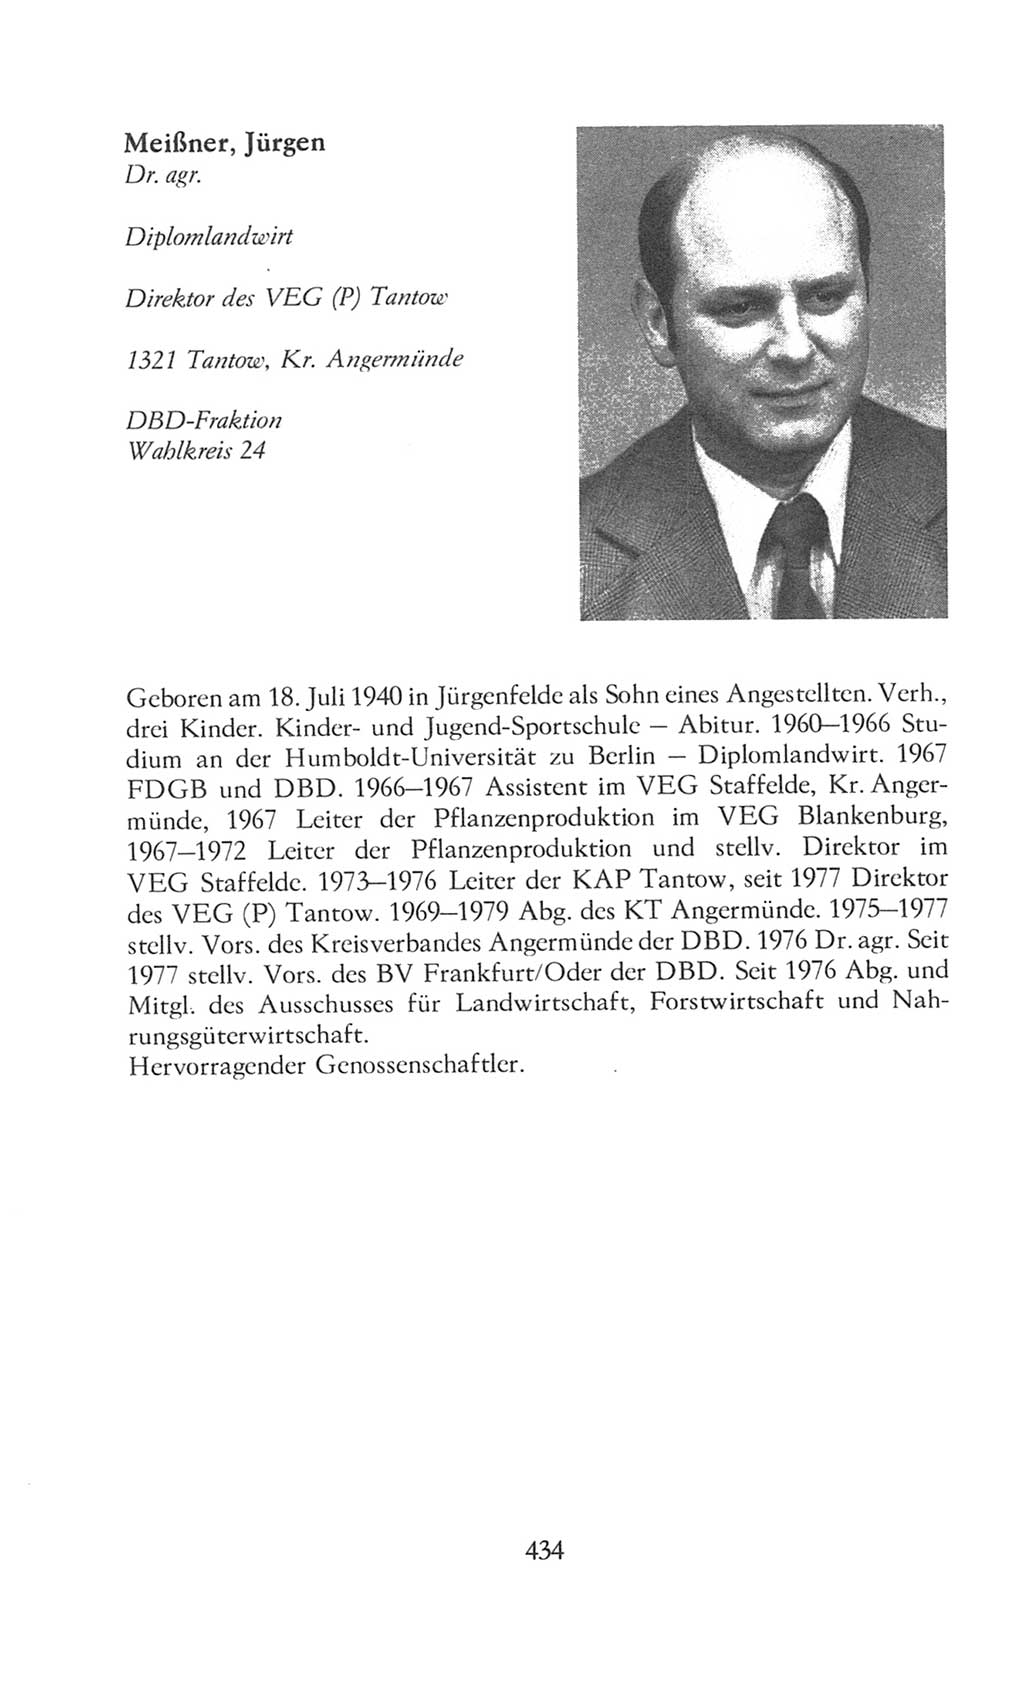 Volkskammer (VK) der Deutschen Demokratischen Republik (DDR), 8. Wahlperiode 1981-1986, Seite 434 (VK. DDR 8. WP. 1981-1986, S. 434)